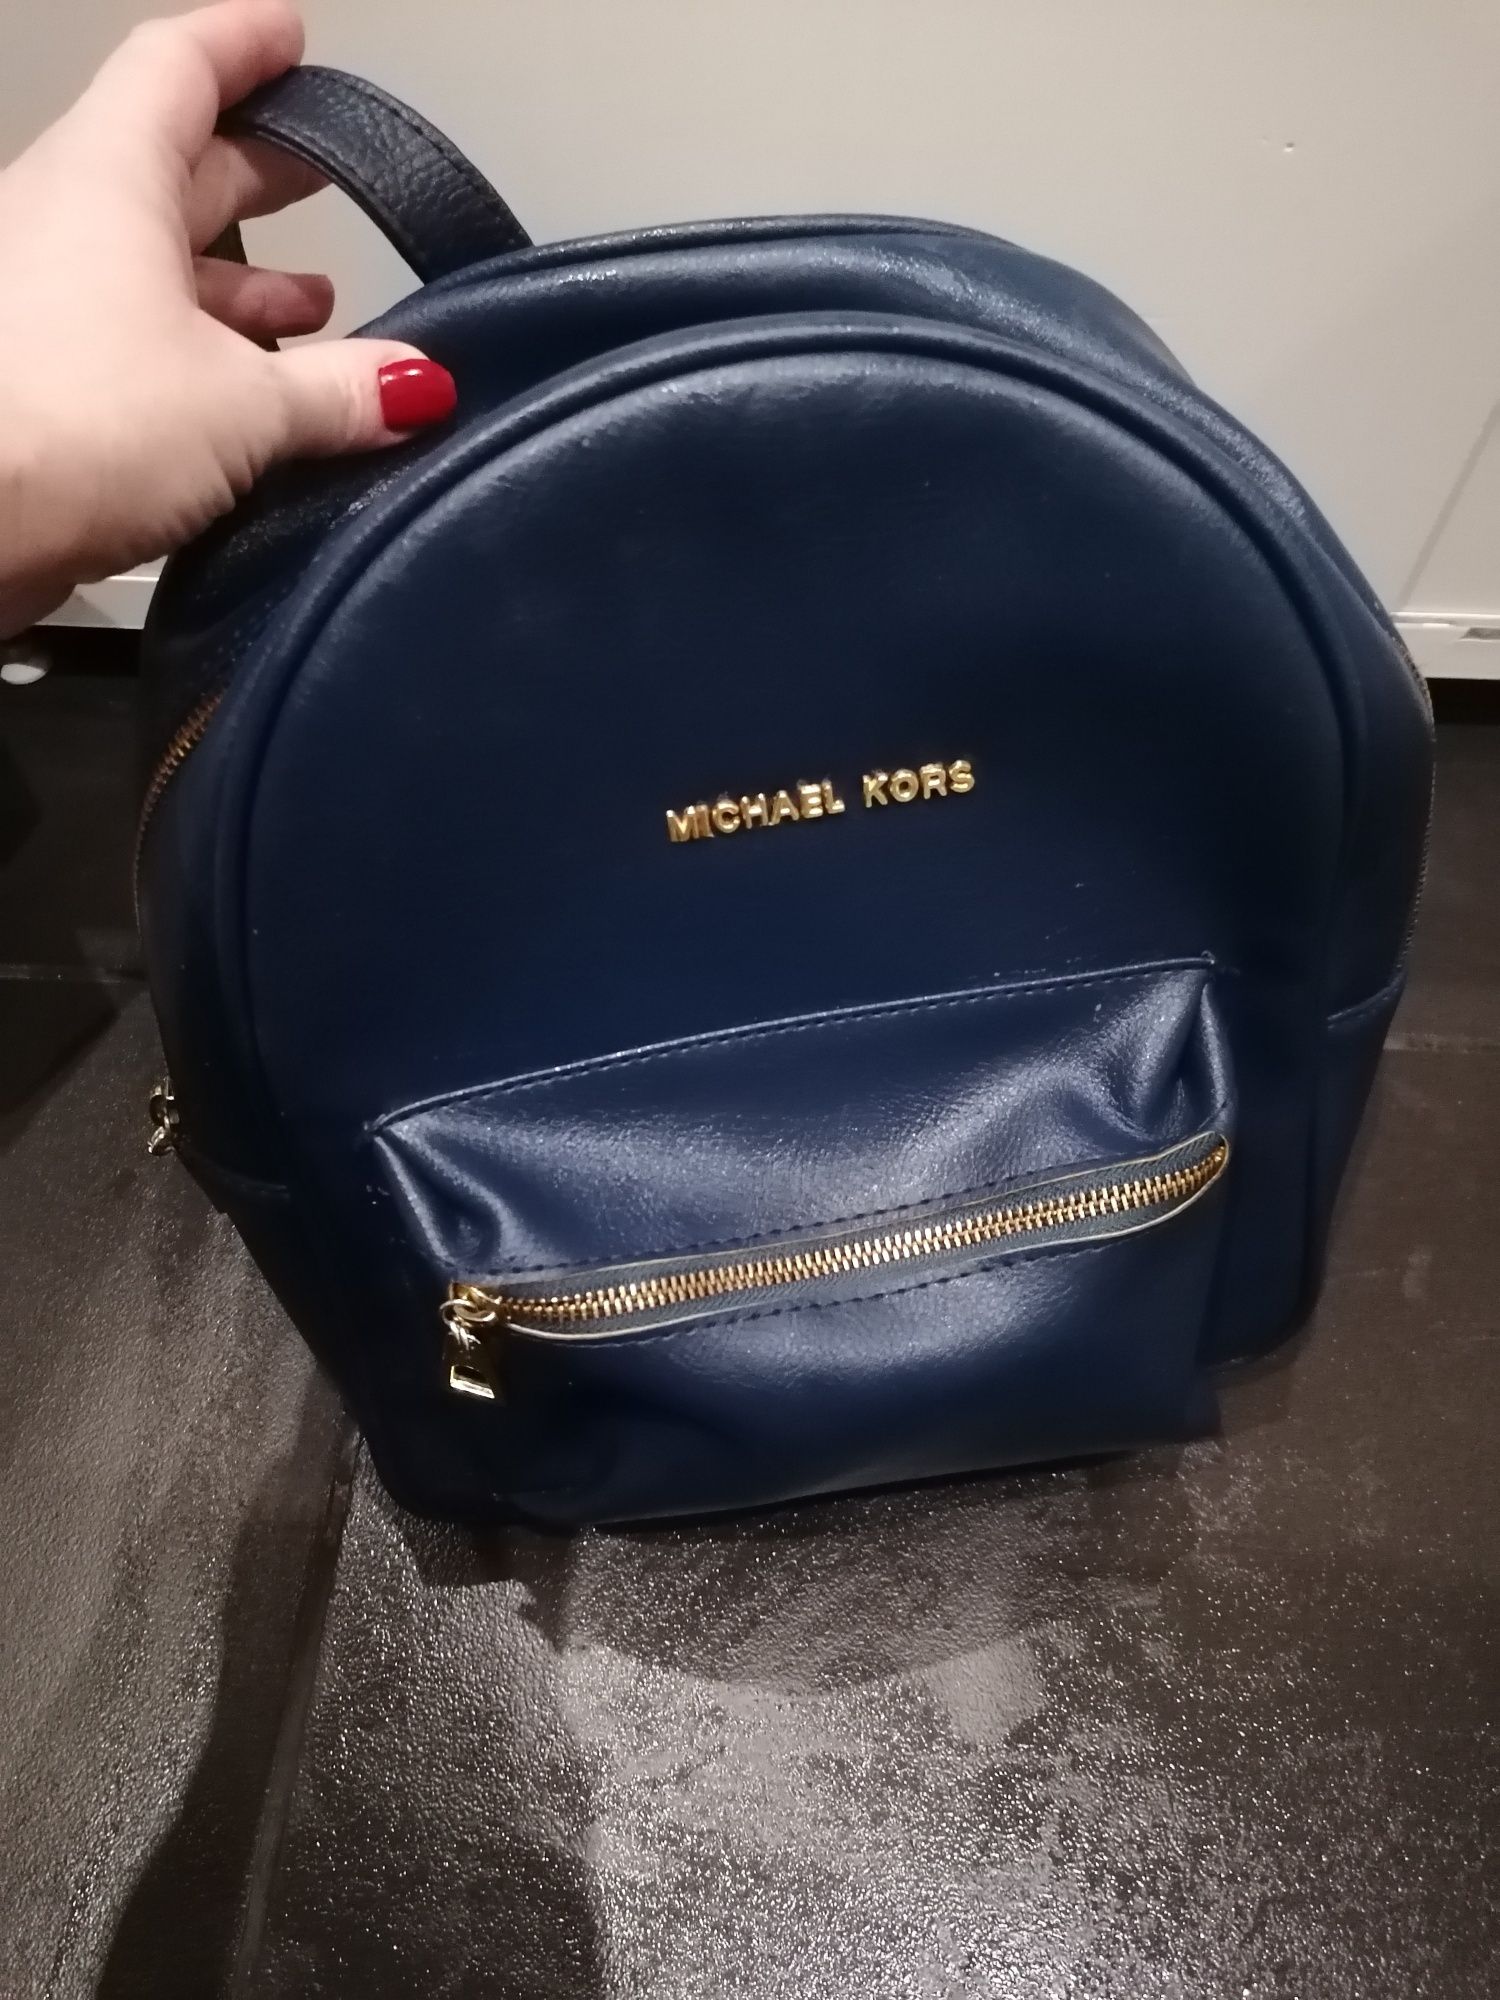 Рюкзак Michael Kors кожа натур синий цвет женский сумка